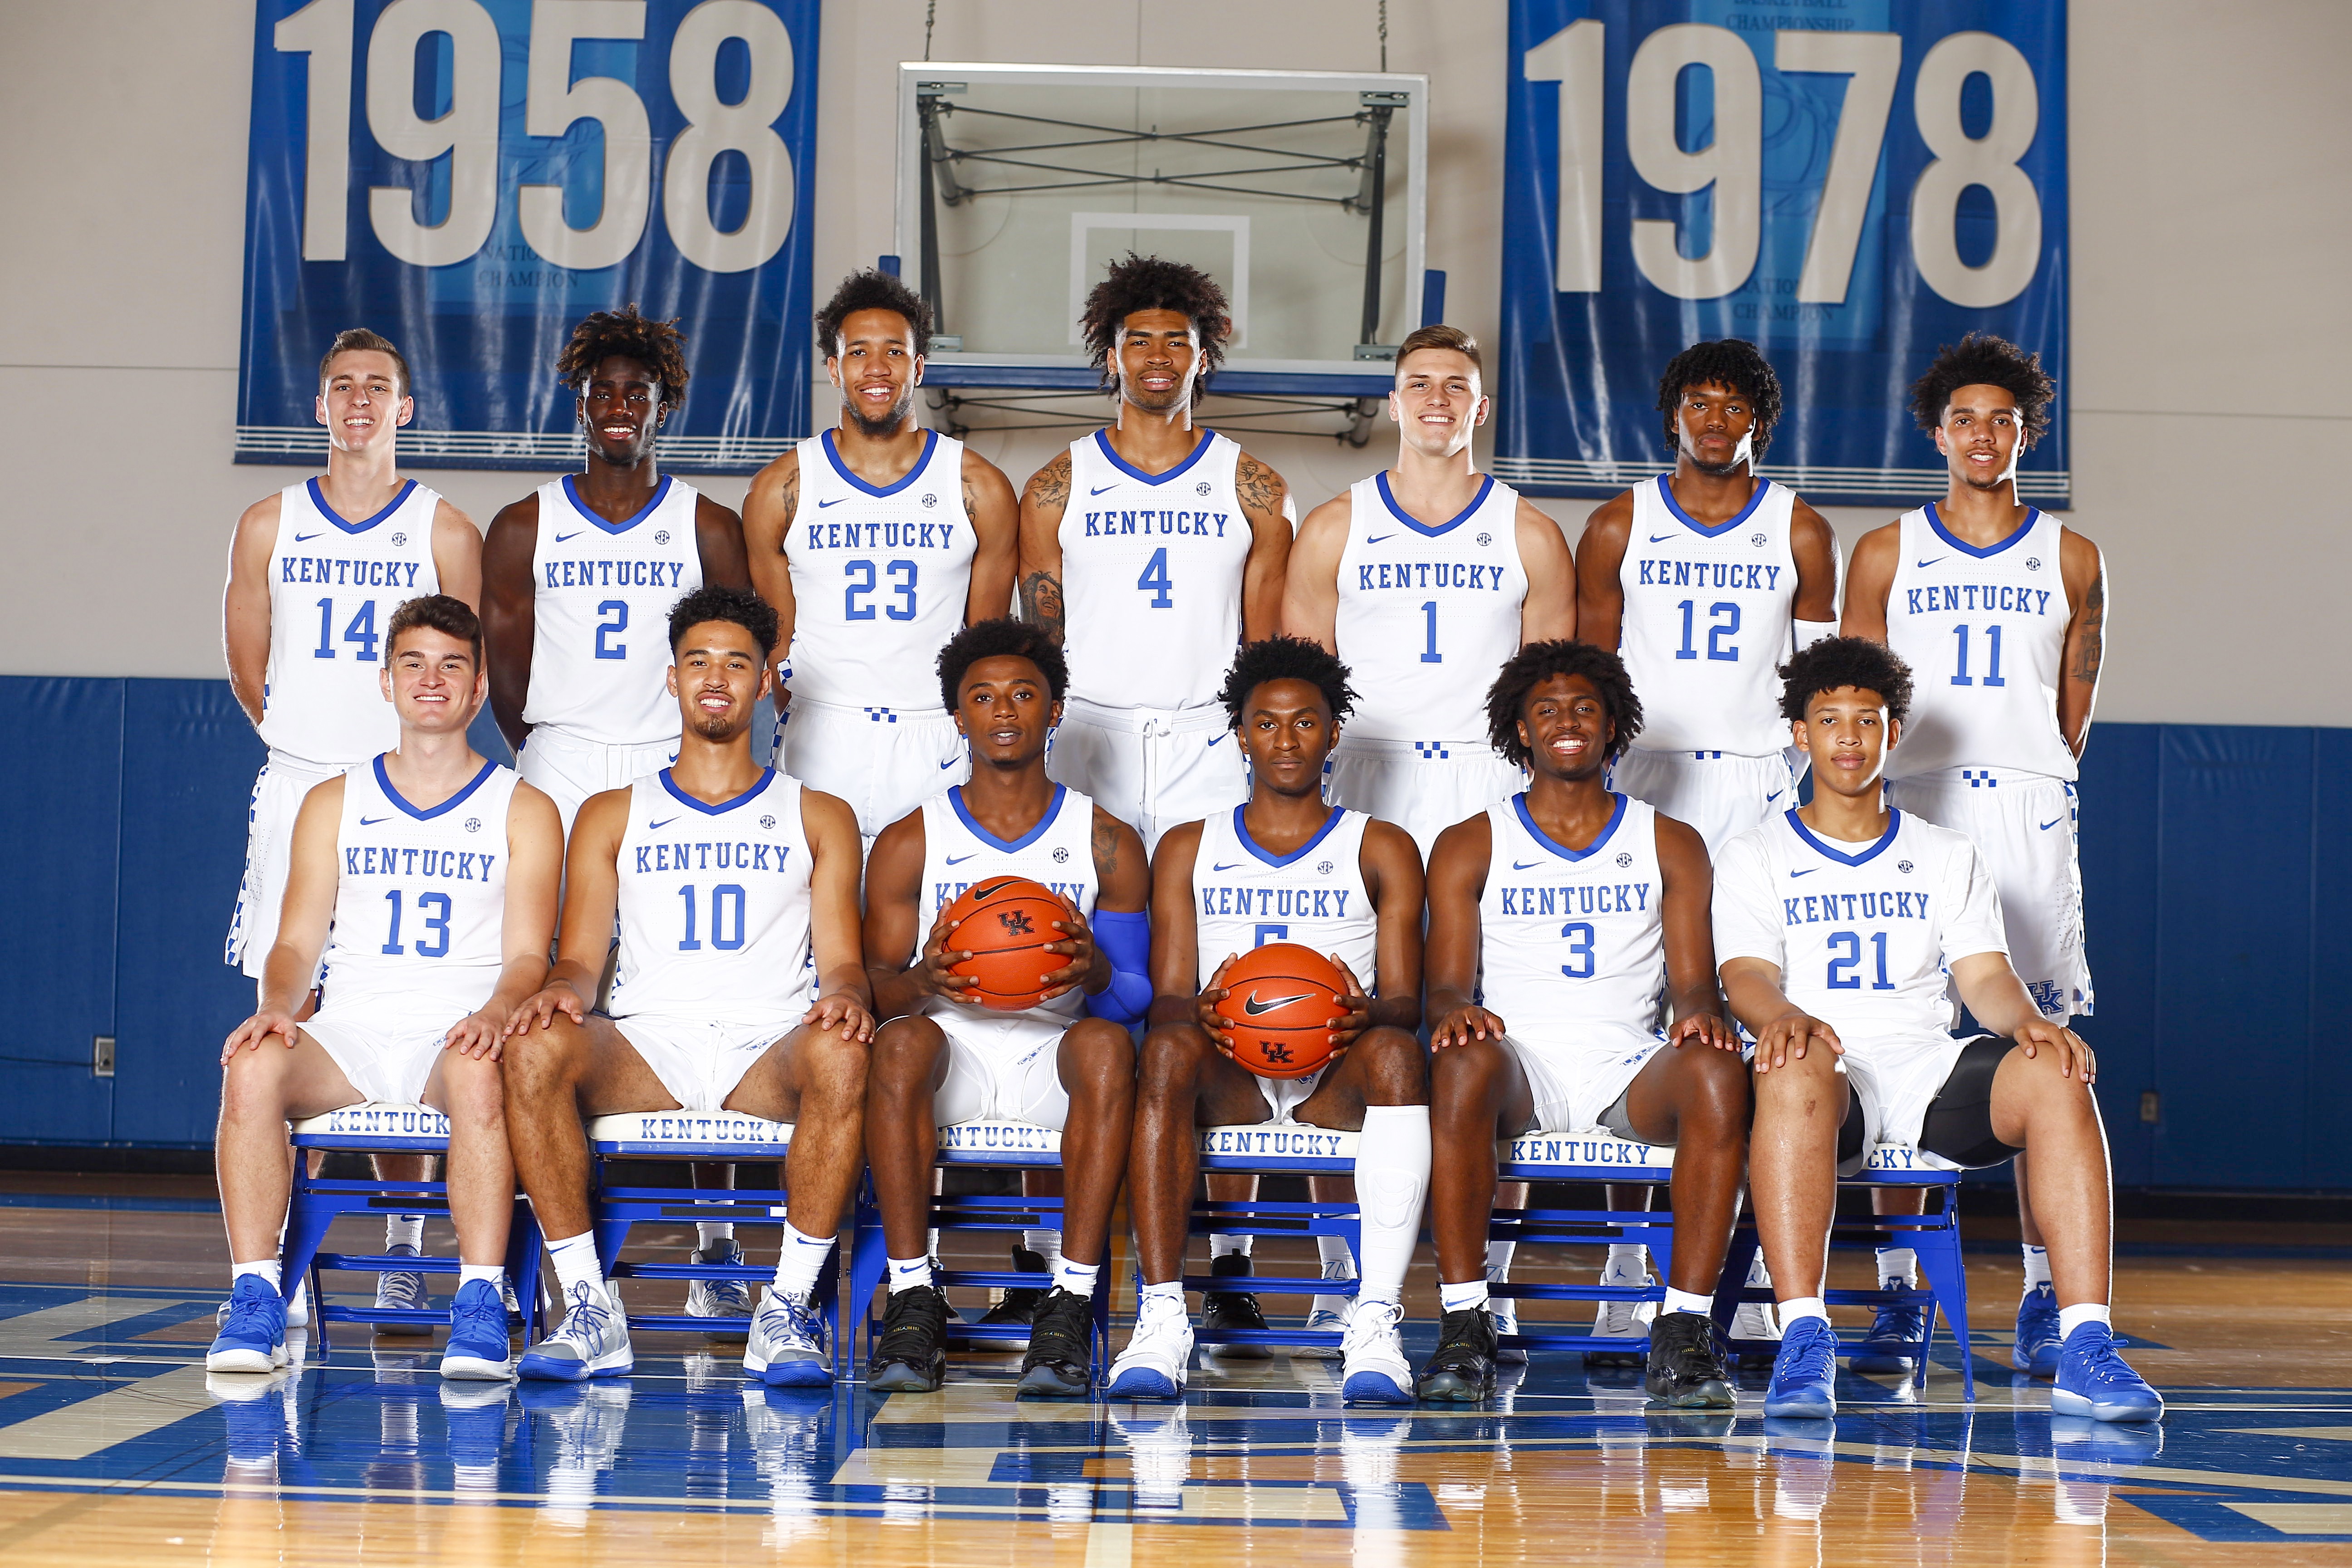 Kentucky Basketball 2019 2020 , HD Wallpaper & Backgrounds